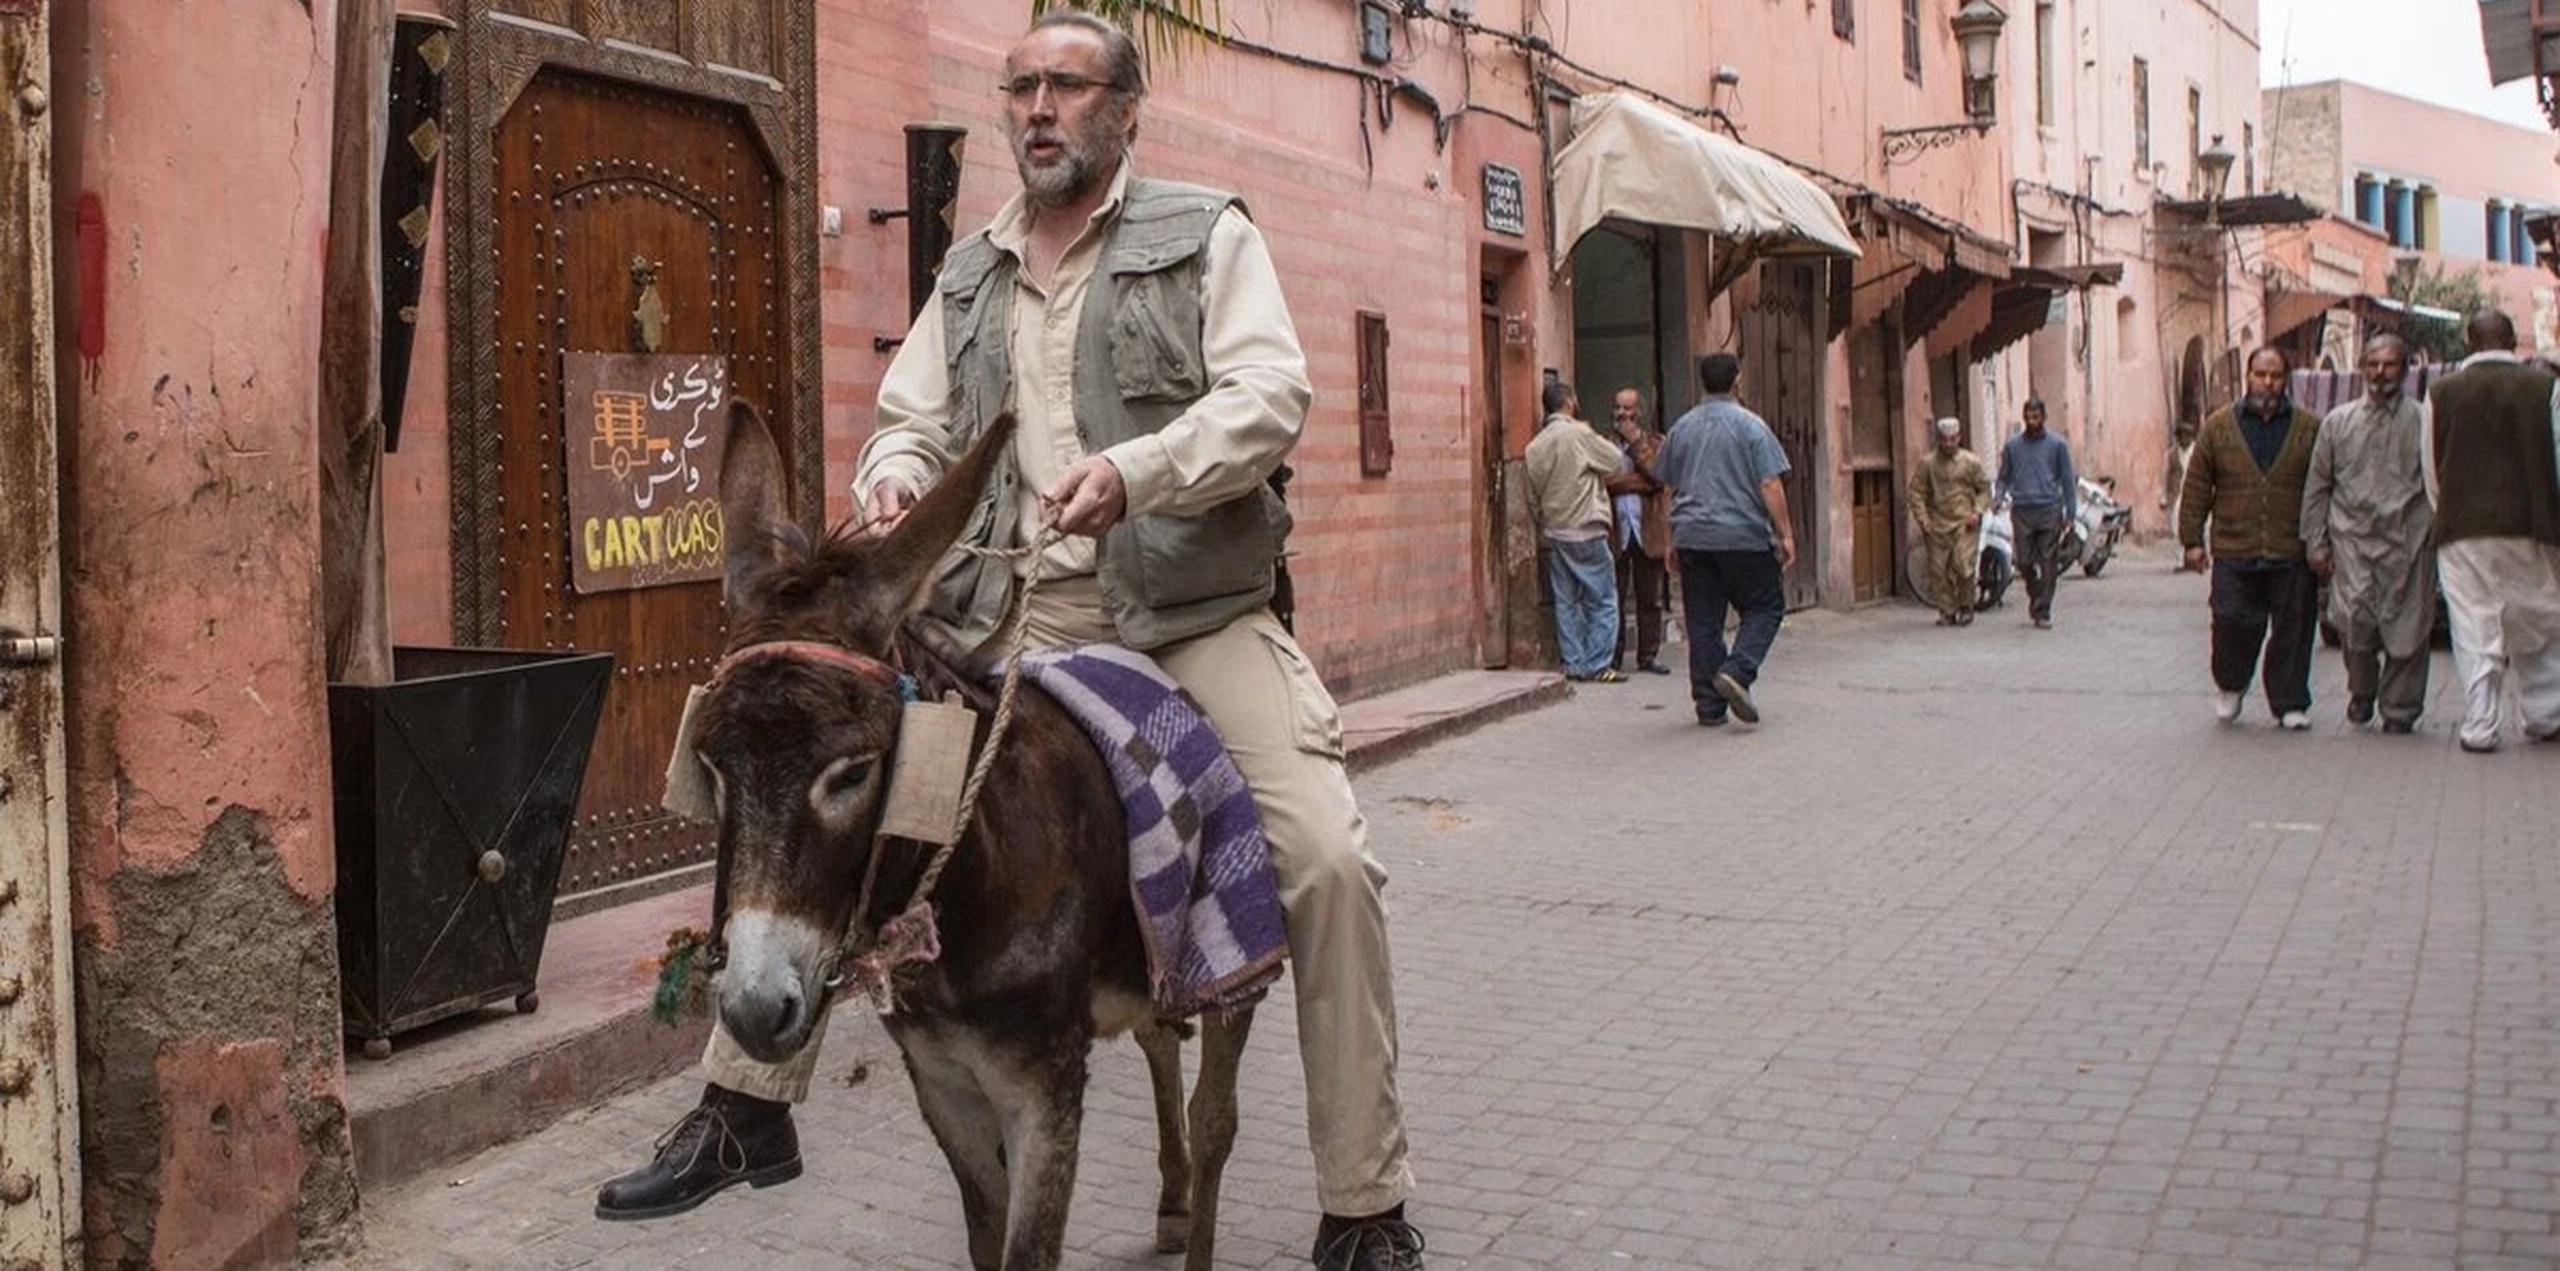 Marrakech fue elegida para representar las calles de una ciudad paquistaní donde Bin Laden, fundador de la red terrorista Al Qaeda, se suponía escondido.